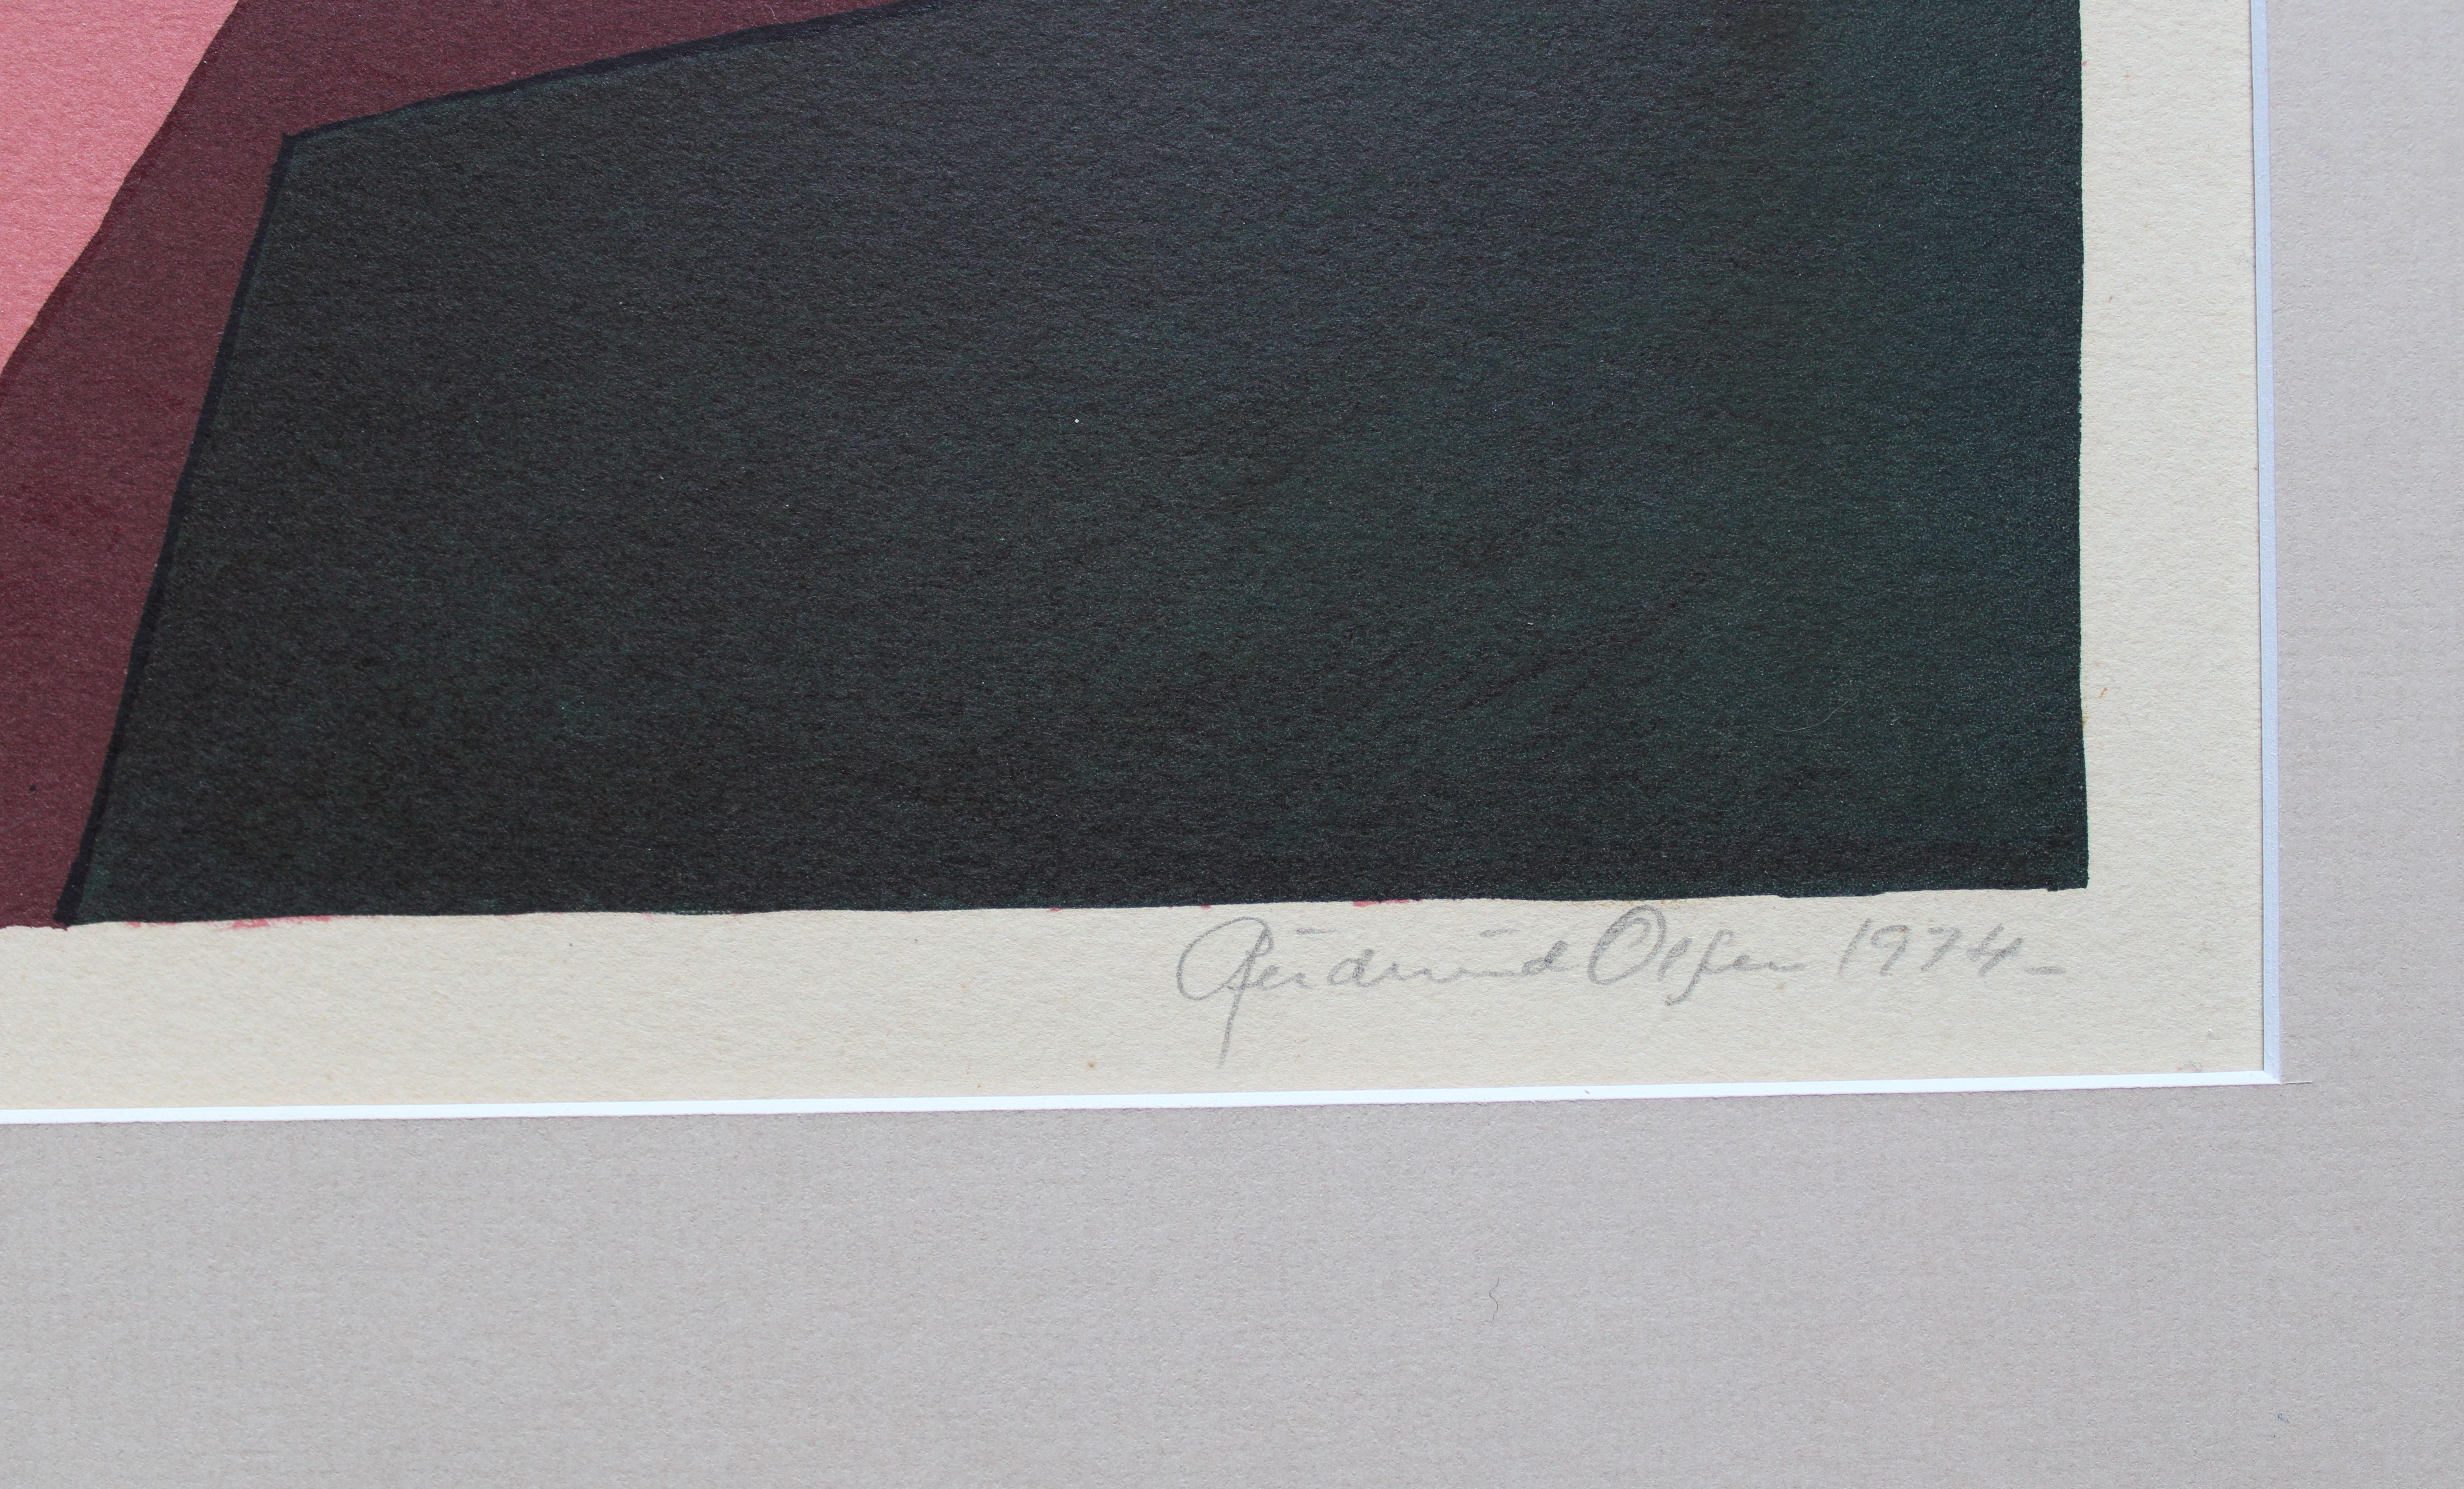  23/100, 1974. Paper, lithograph, 43x65 cm